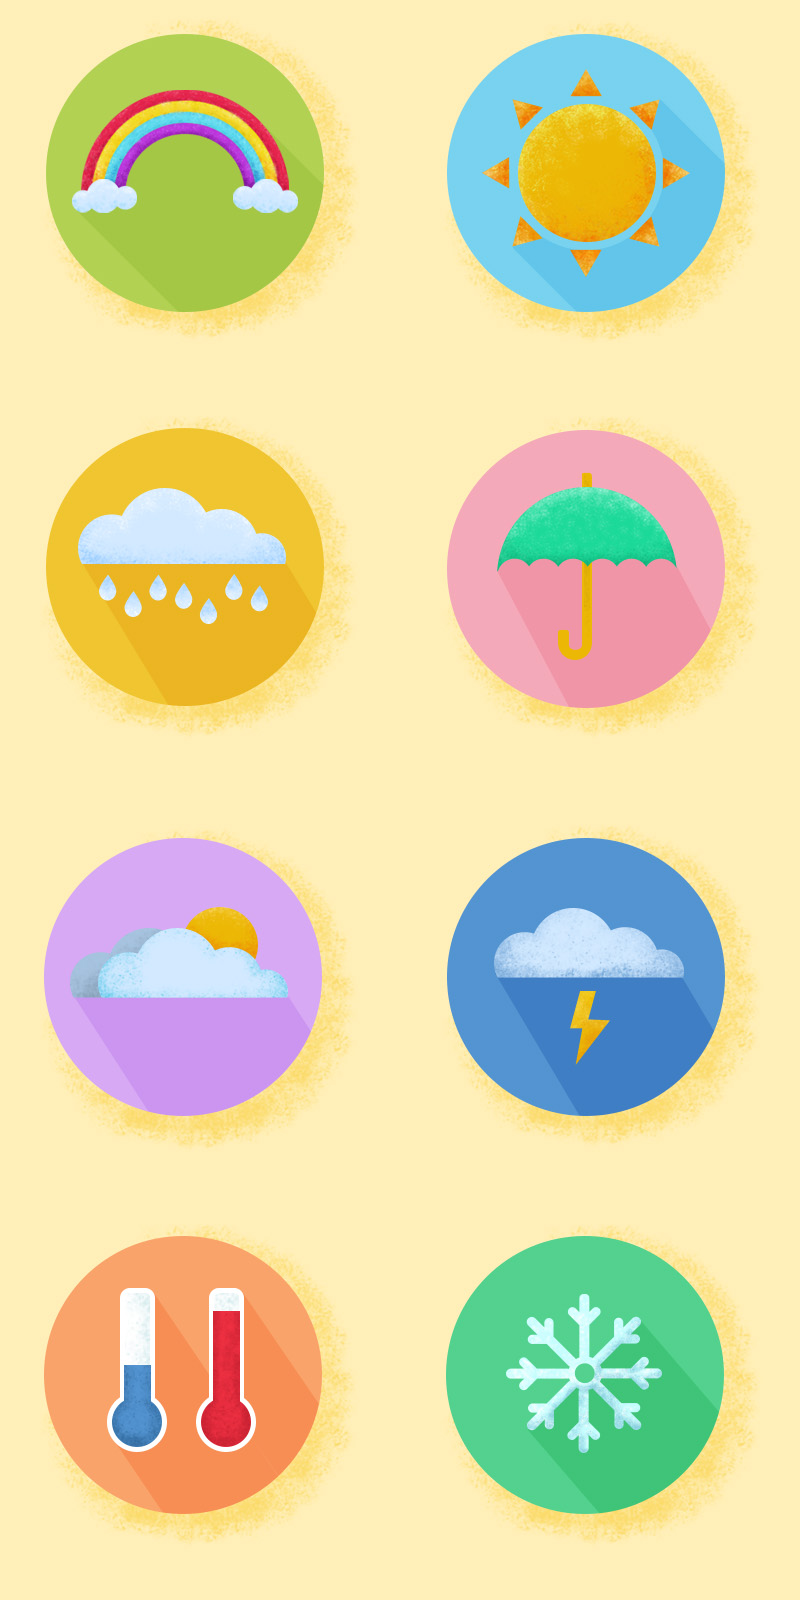 天气类的icon,插件,图标设计